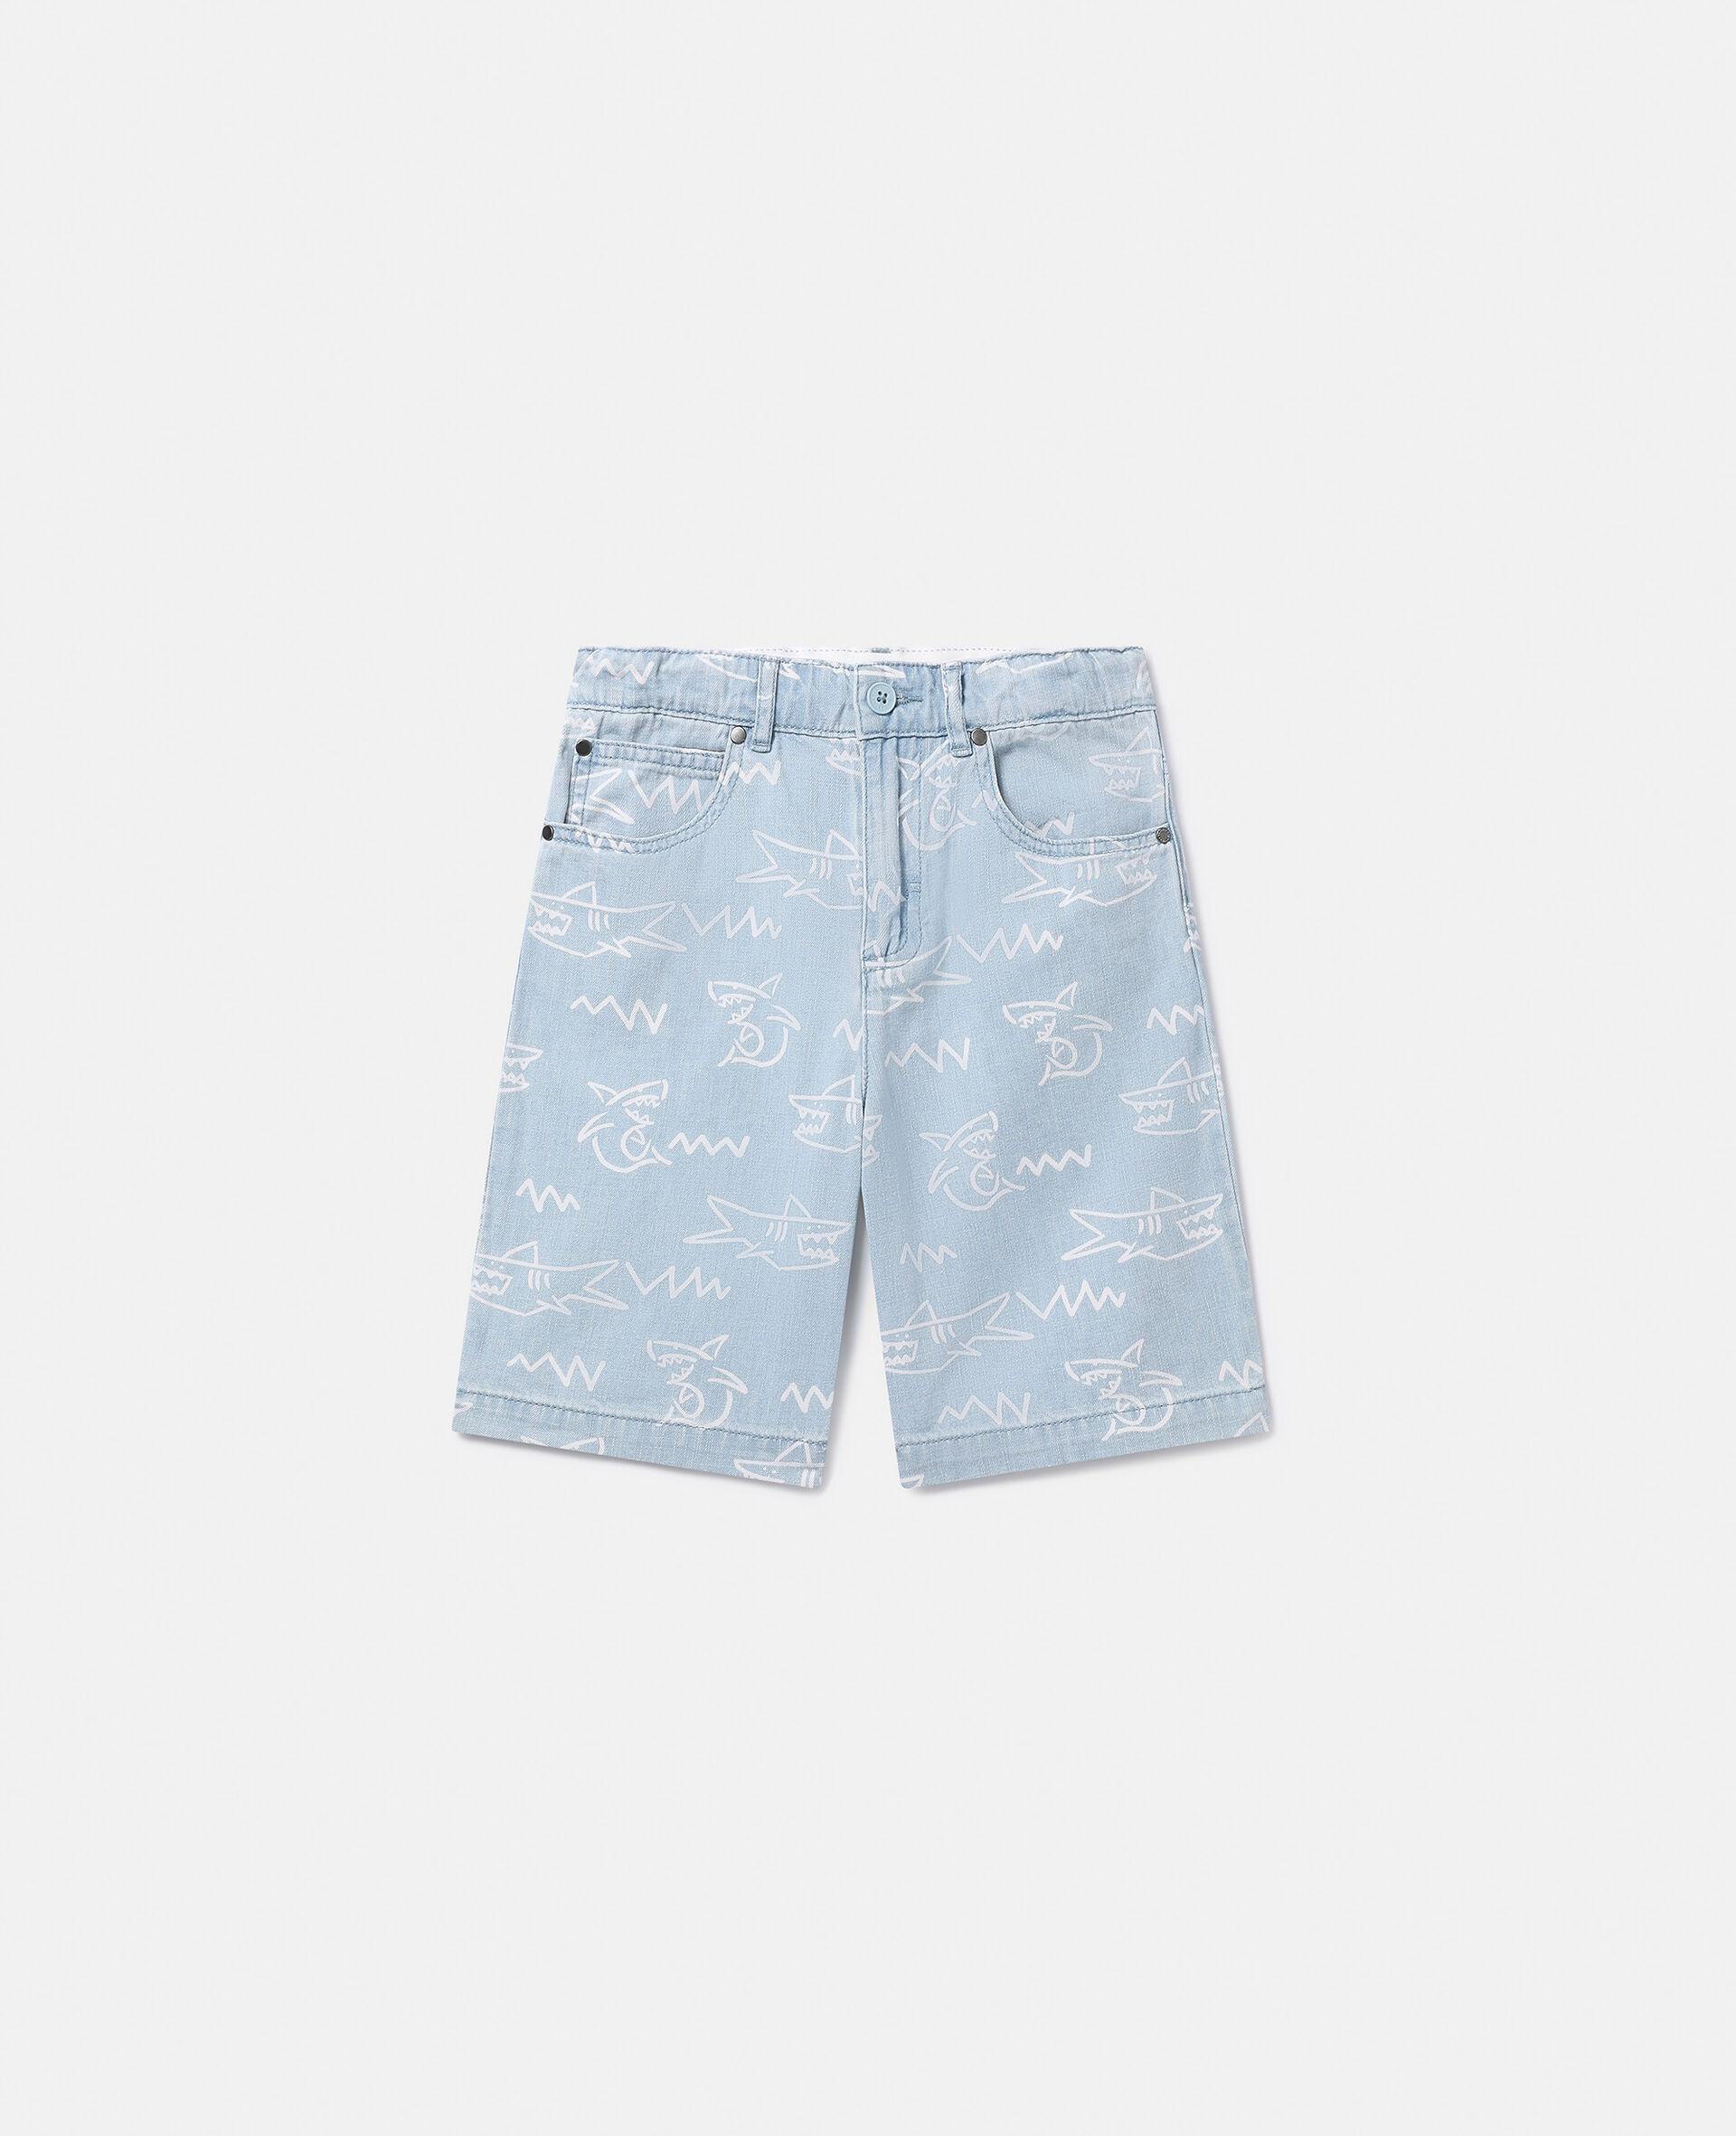 Shark Print Denim Shorts-蓝色-medium